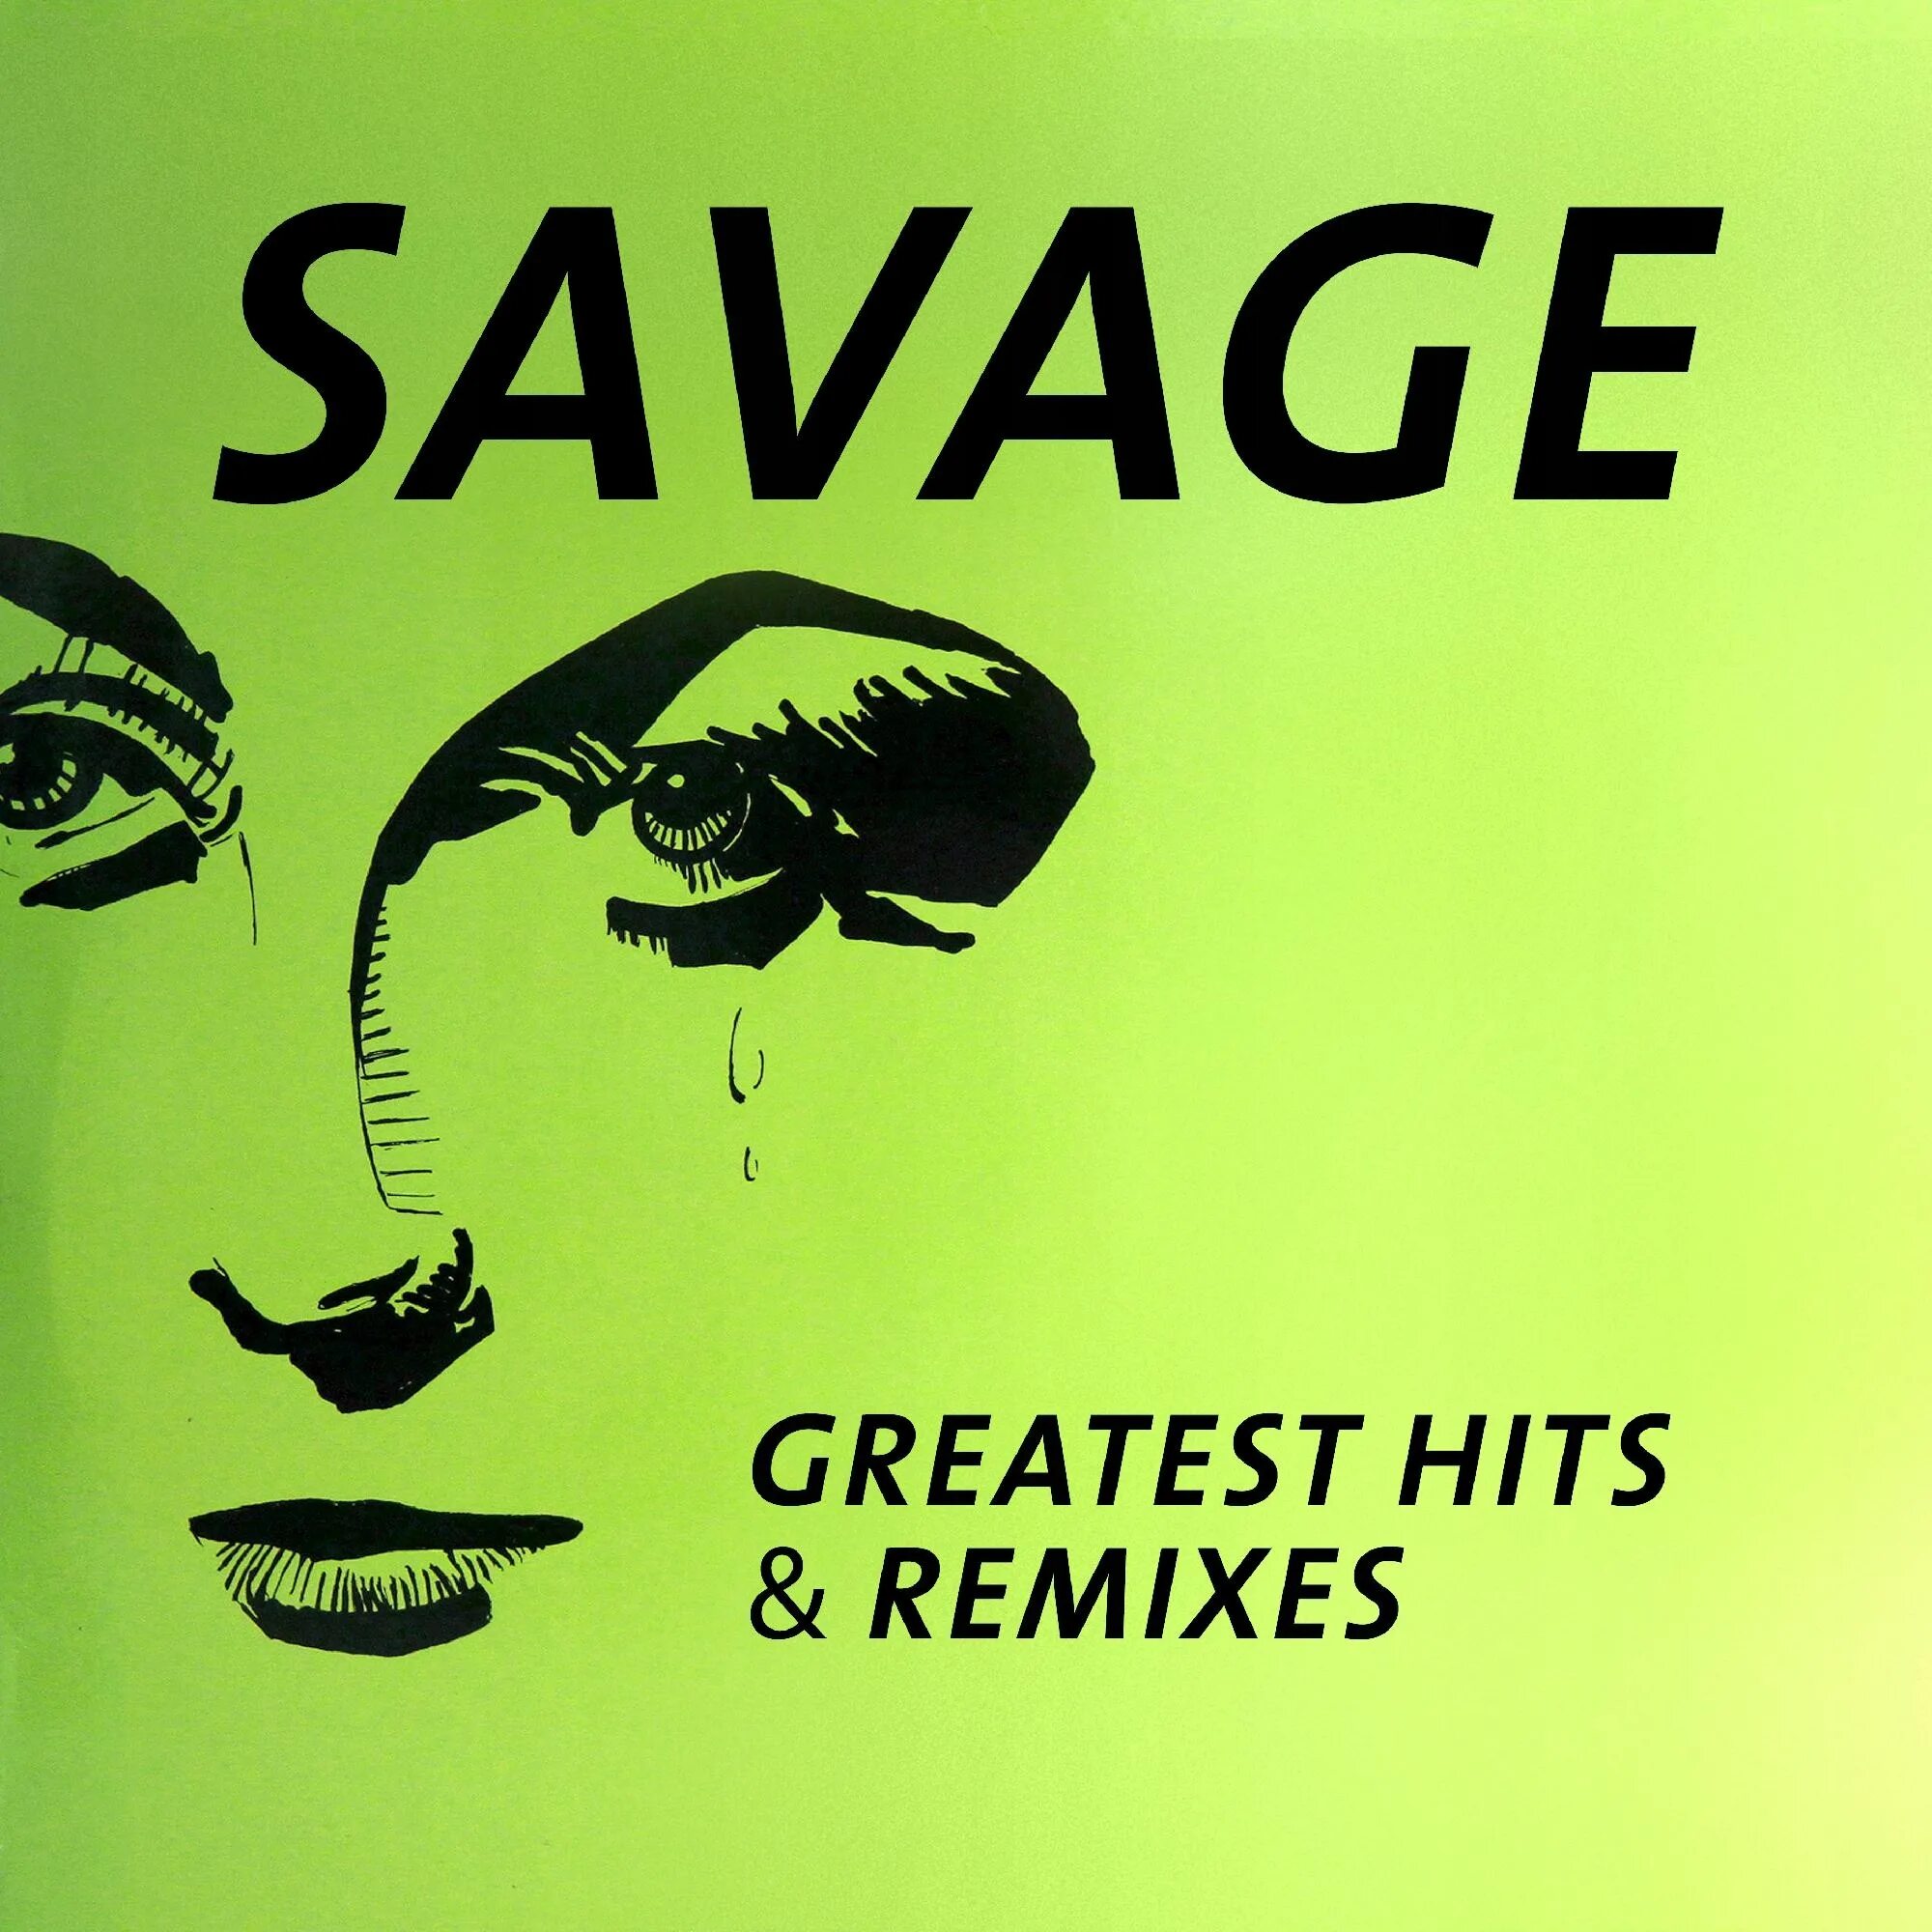 Savage Greatest Hits 1989. Savage - Greatest Hits & Remixes. Savage Greatest Hits Remixes 2016. Savage обложки альбомов.